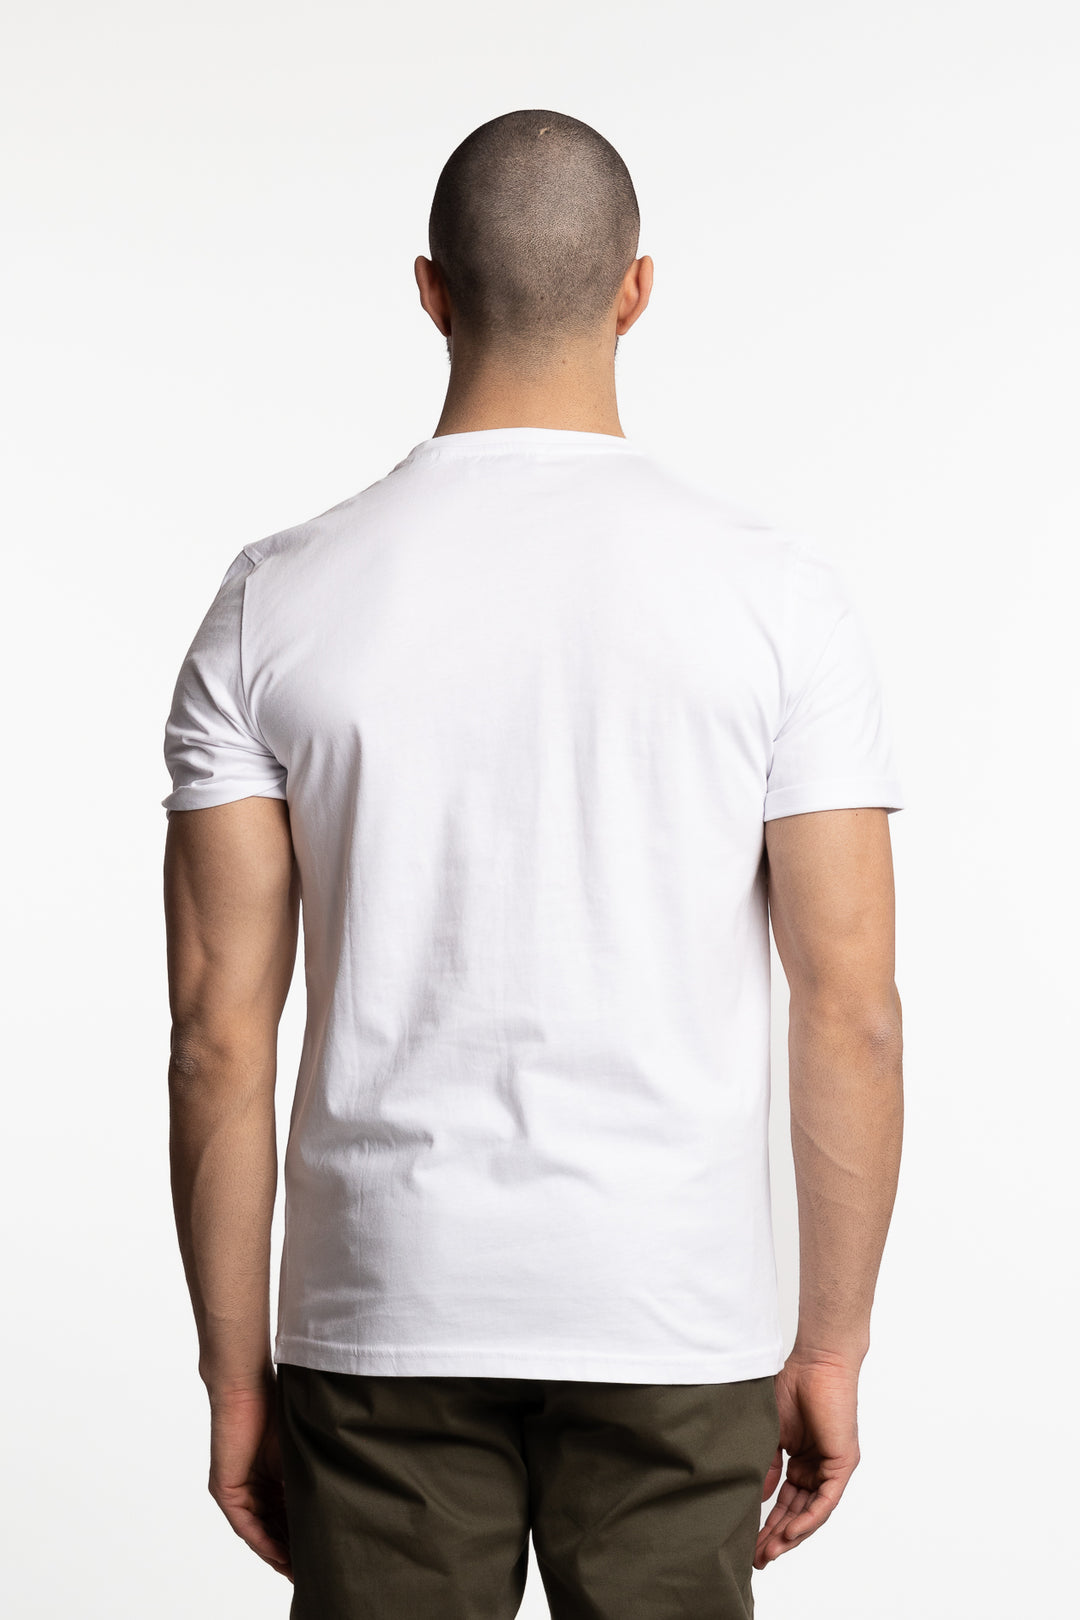 Copenhagen 2011 T-Shirt White